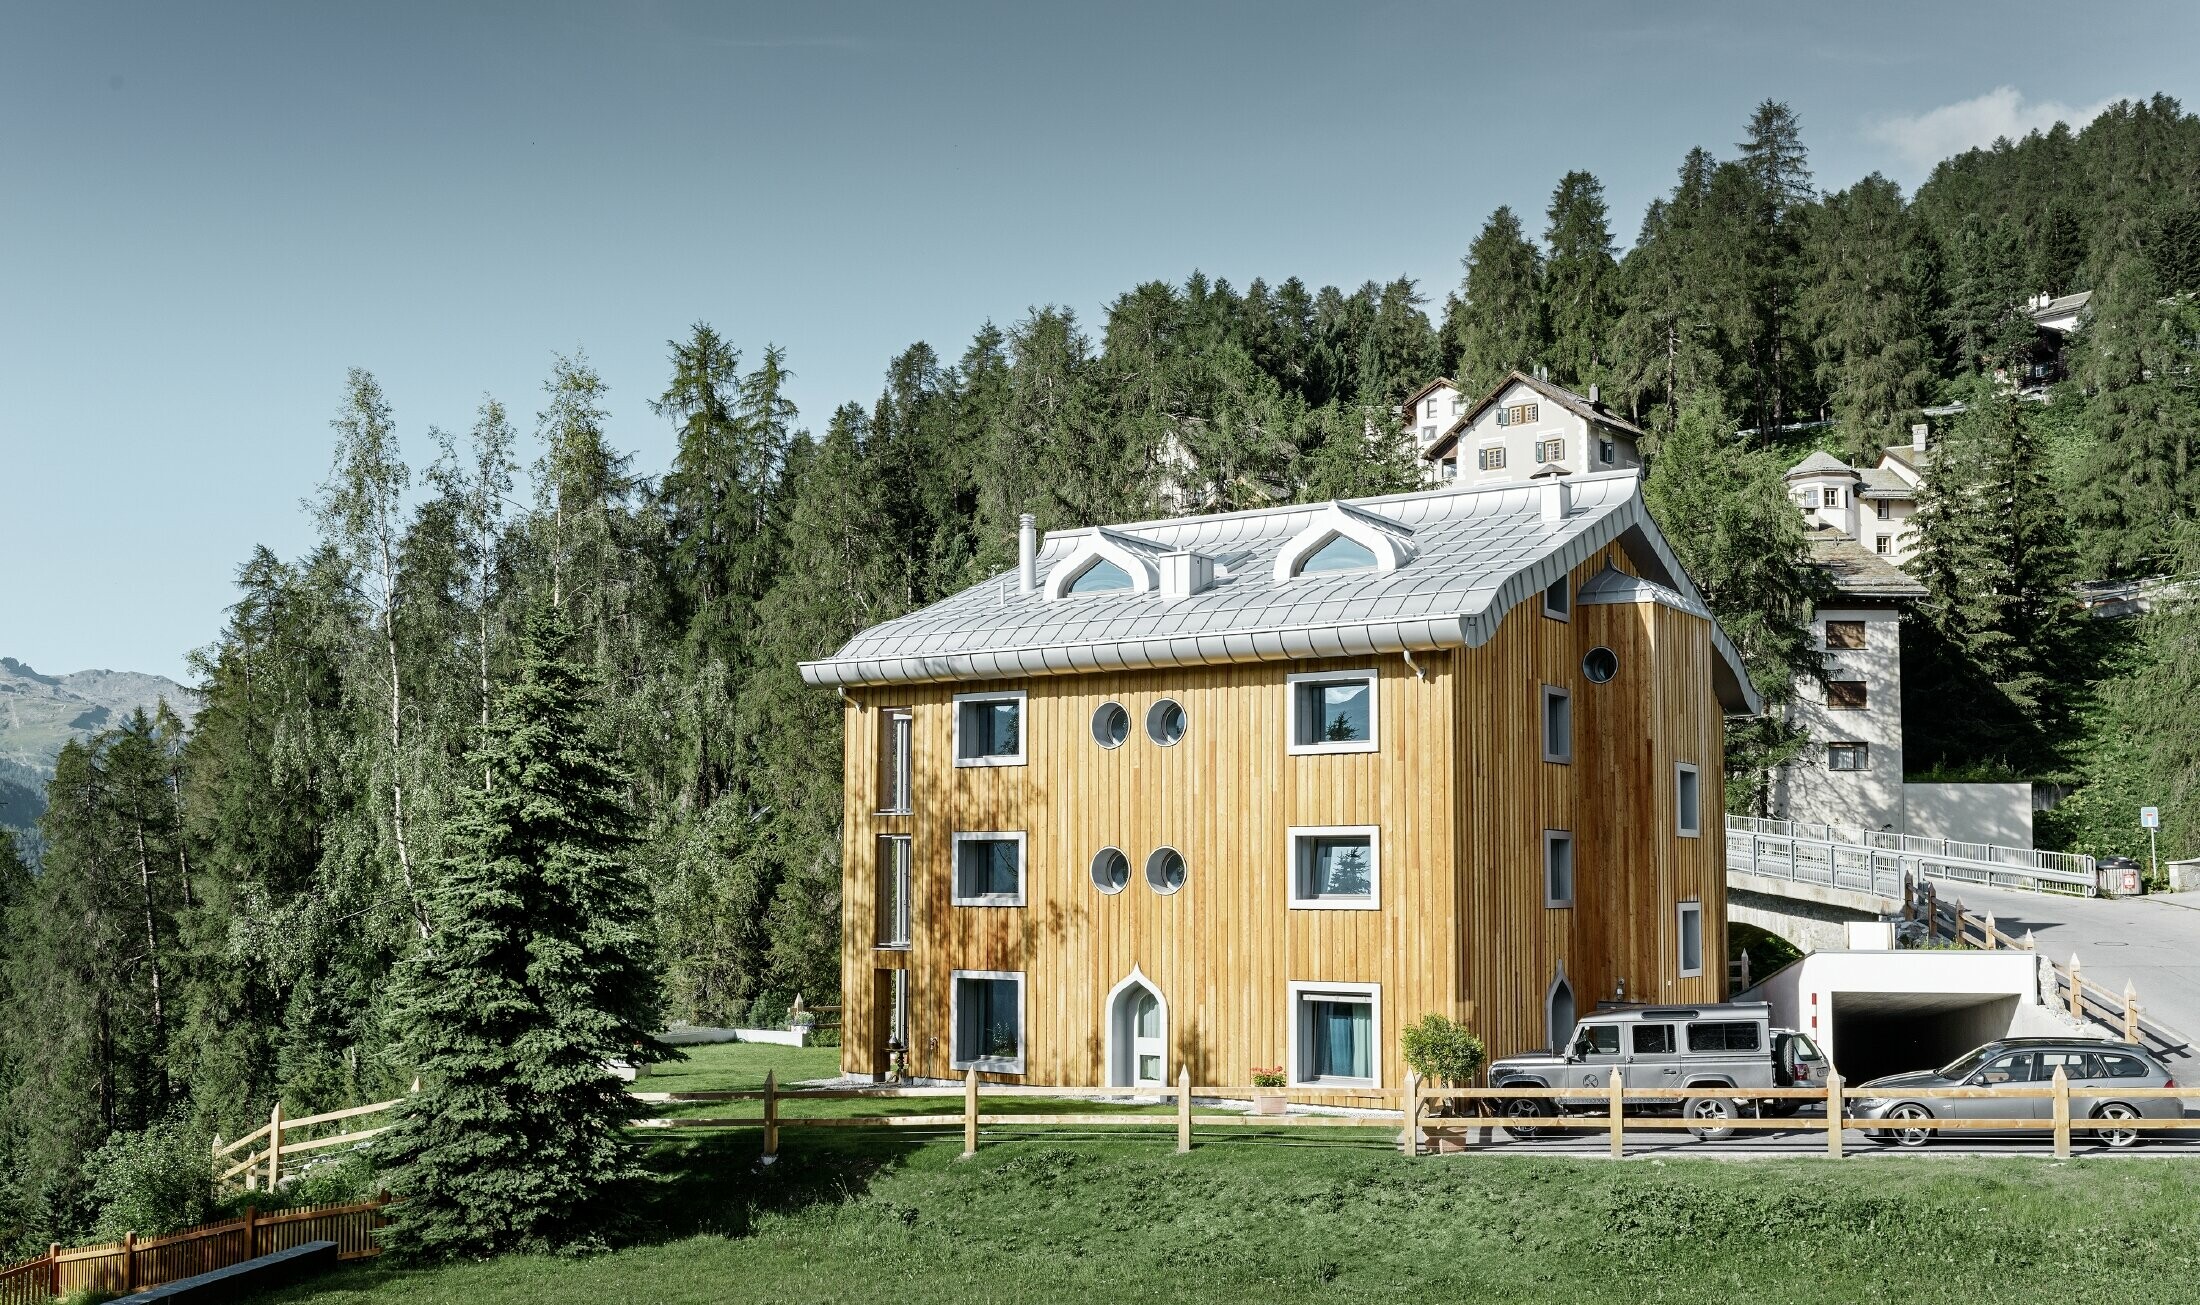 Wohnhausanlage in St. Moritz mit Holzfassade und Aluminiumdach mit geschwungener Traufe in silbermetallic